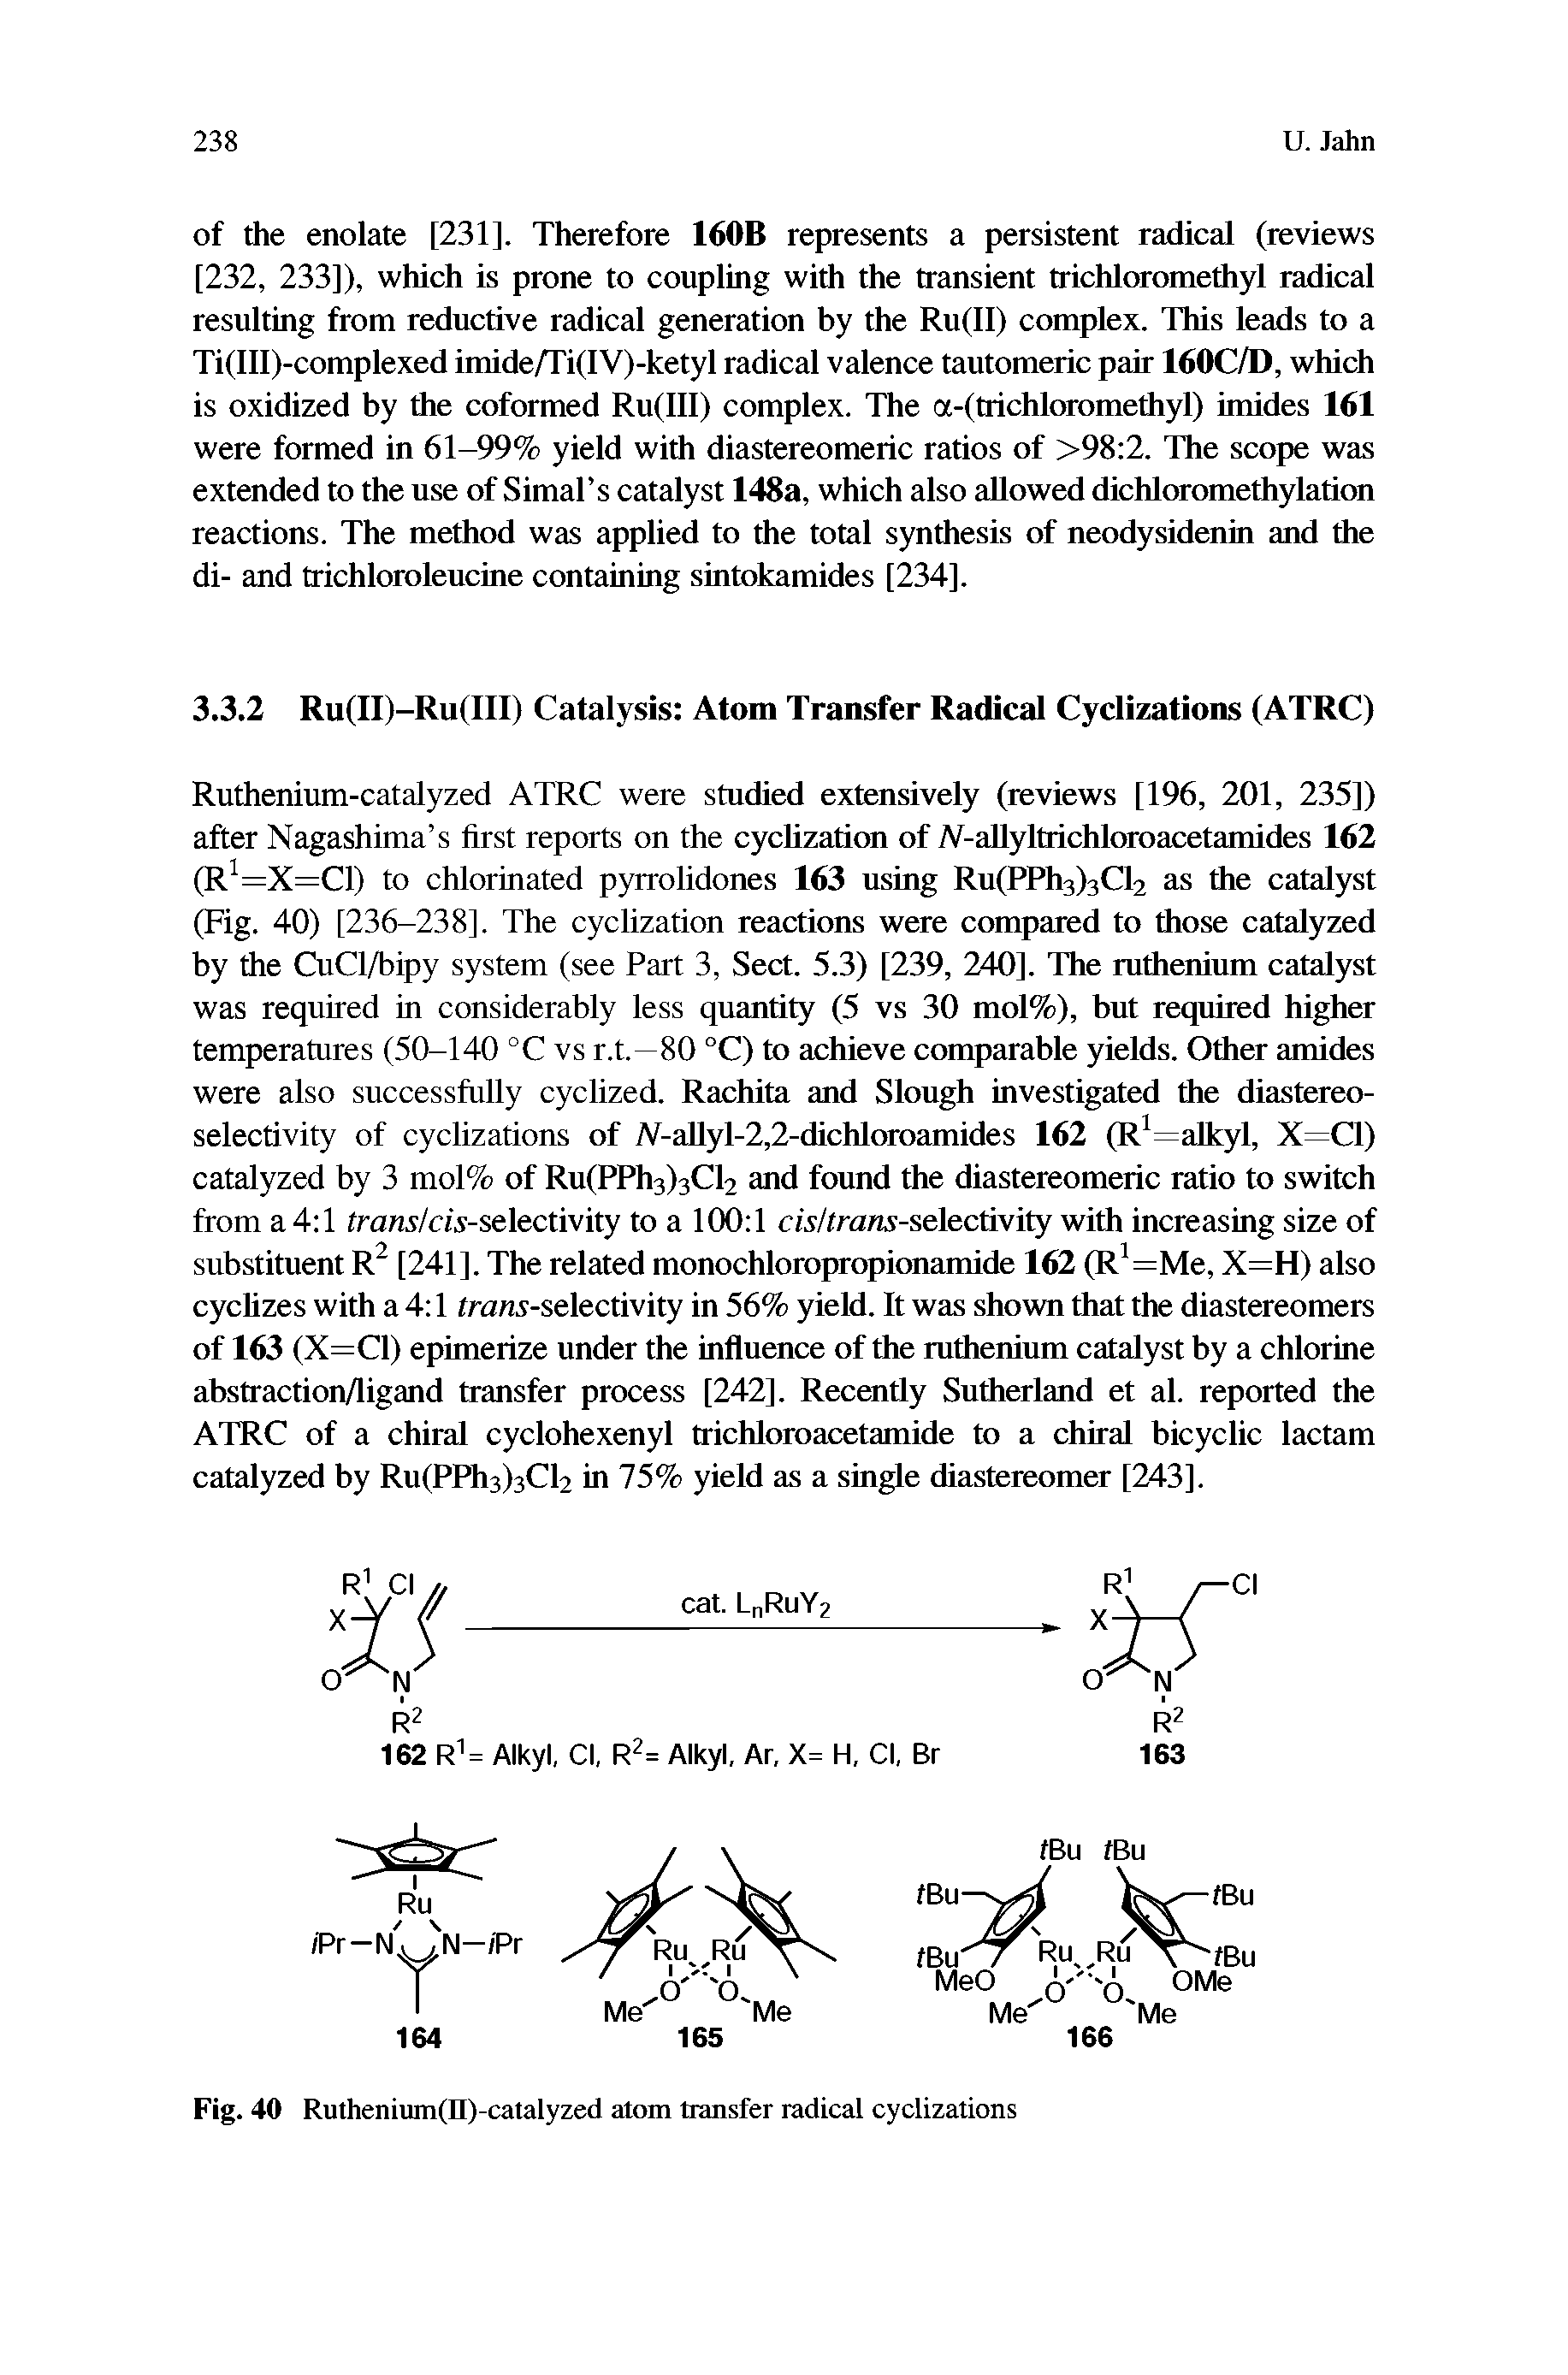 Fig. 40 Ruthenium(II)-catalyzed atom transfer radical cyclizations...